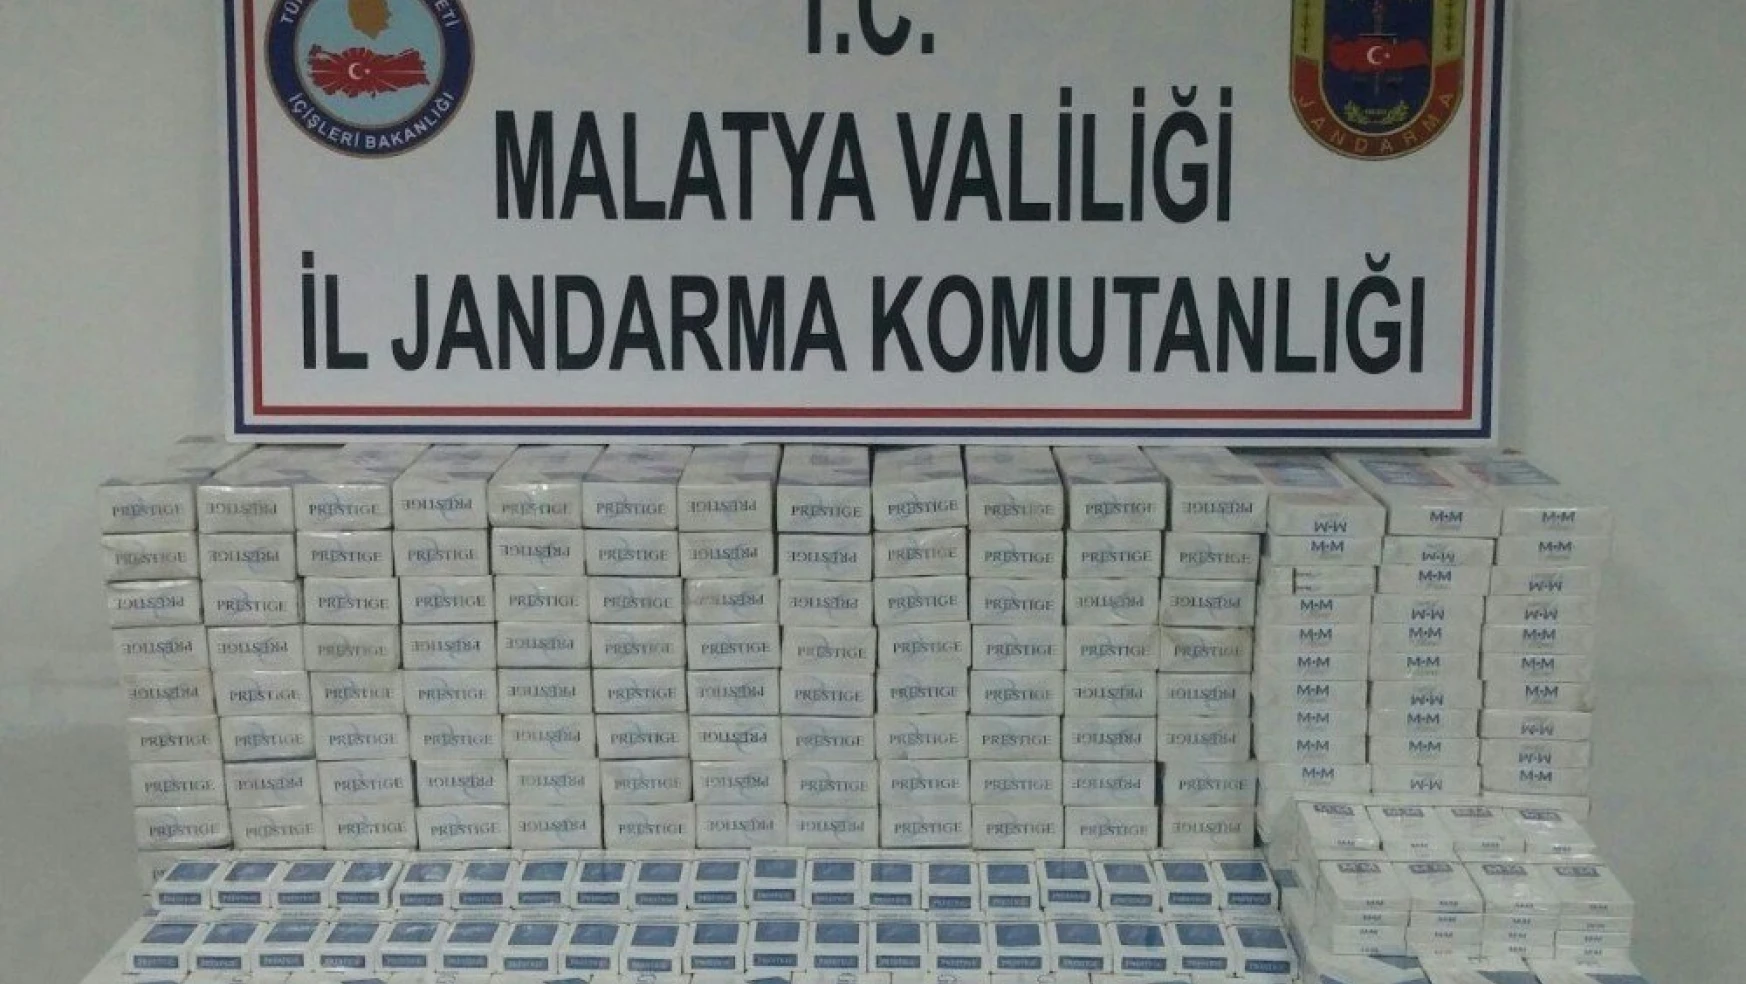 Malatya'da 2 bin karton kaçak sigara ele geçirildi
